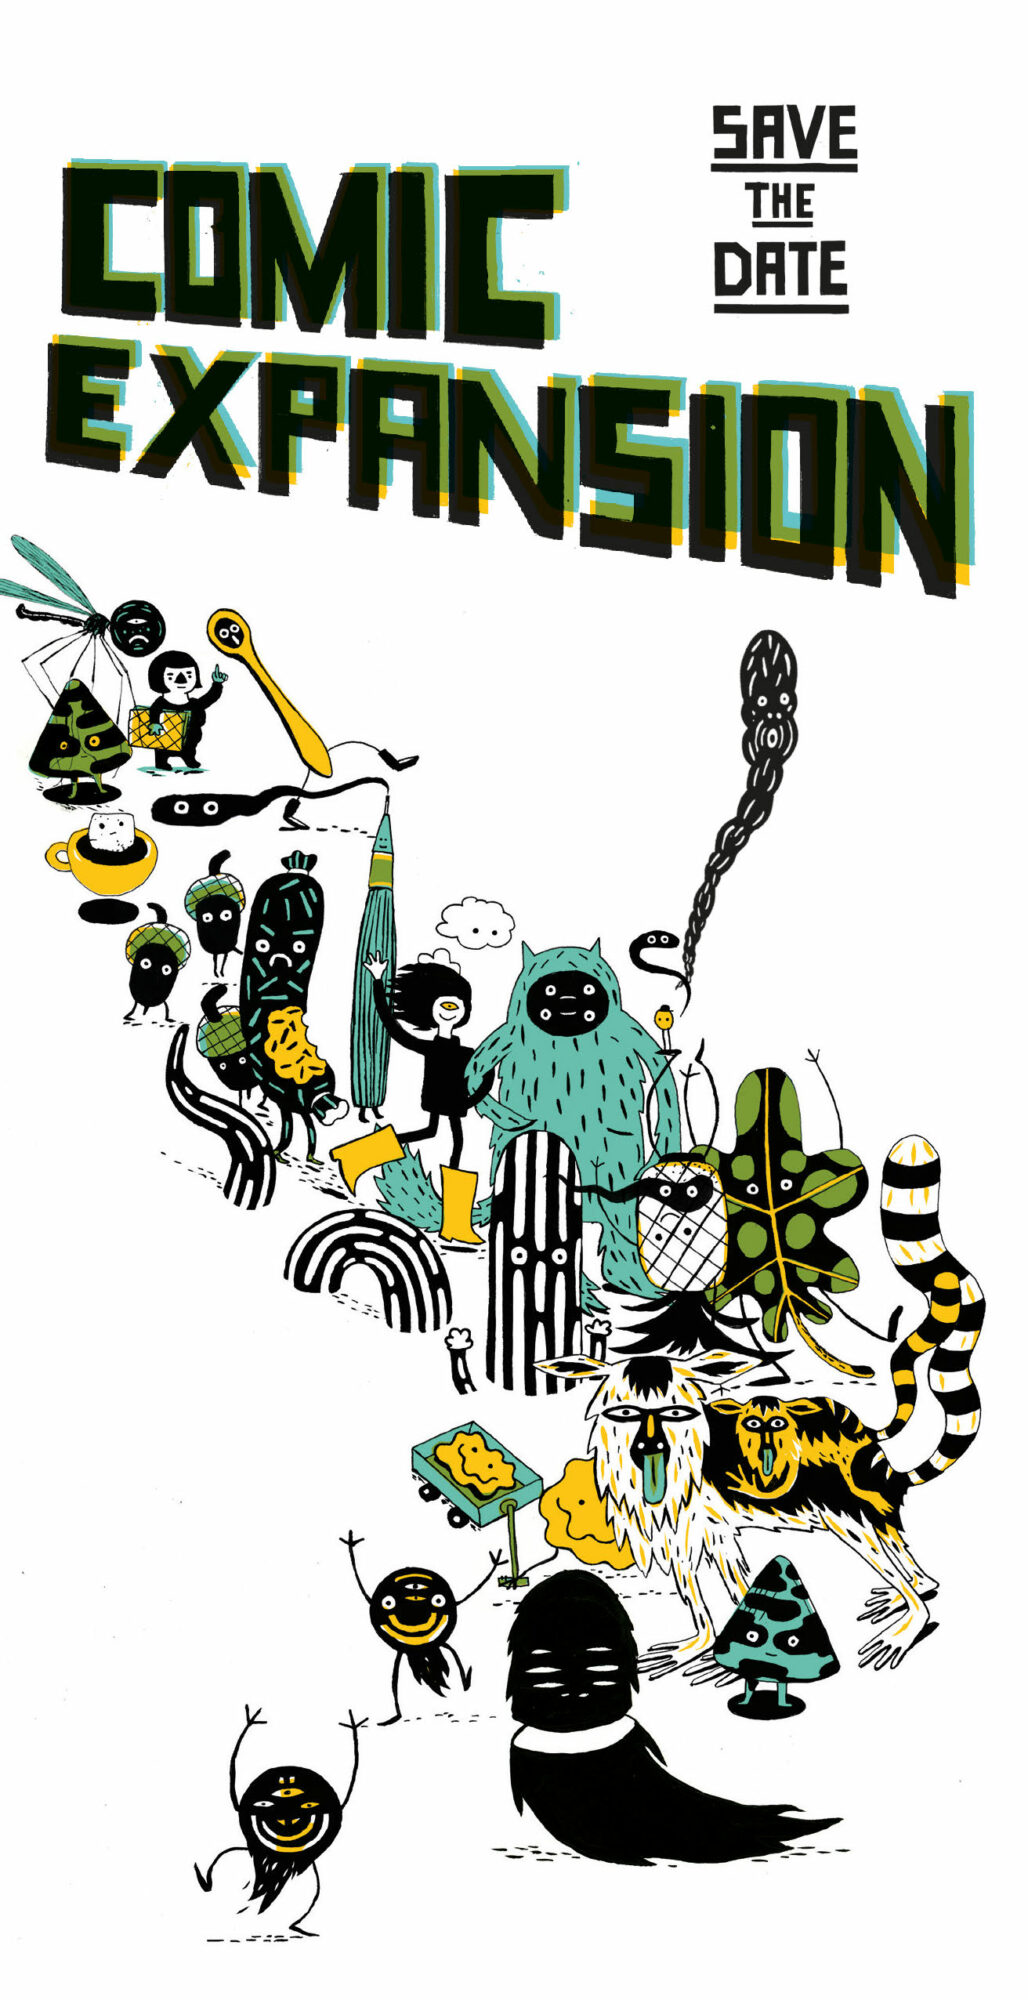 Titelmotiv für die Comicexpansion, illustriert von Nele Brönner. Gezeichnete bunte Phantasiefiguren bilden eine Parade von links oben nach rechts unten.